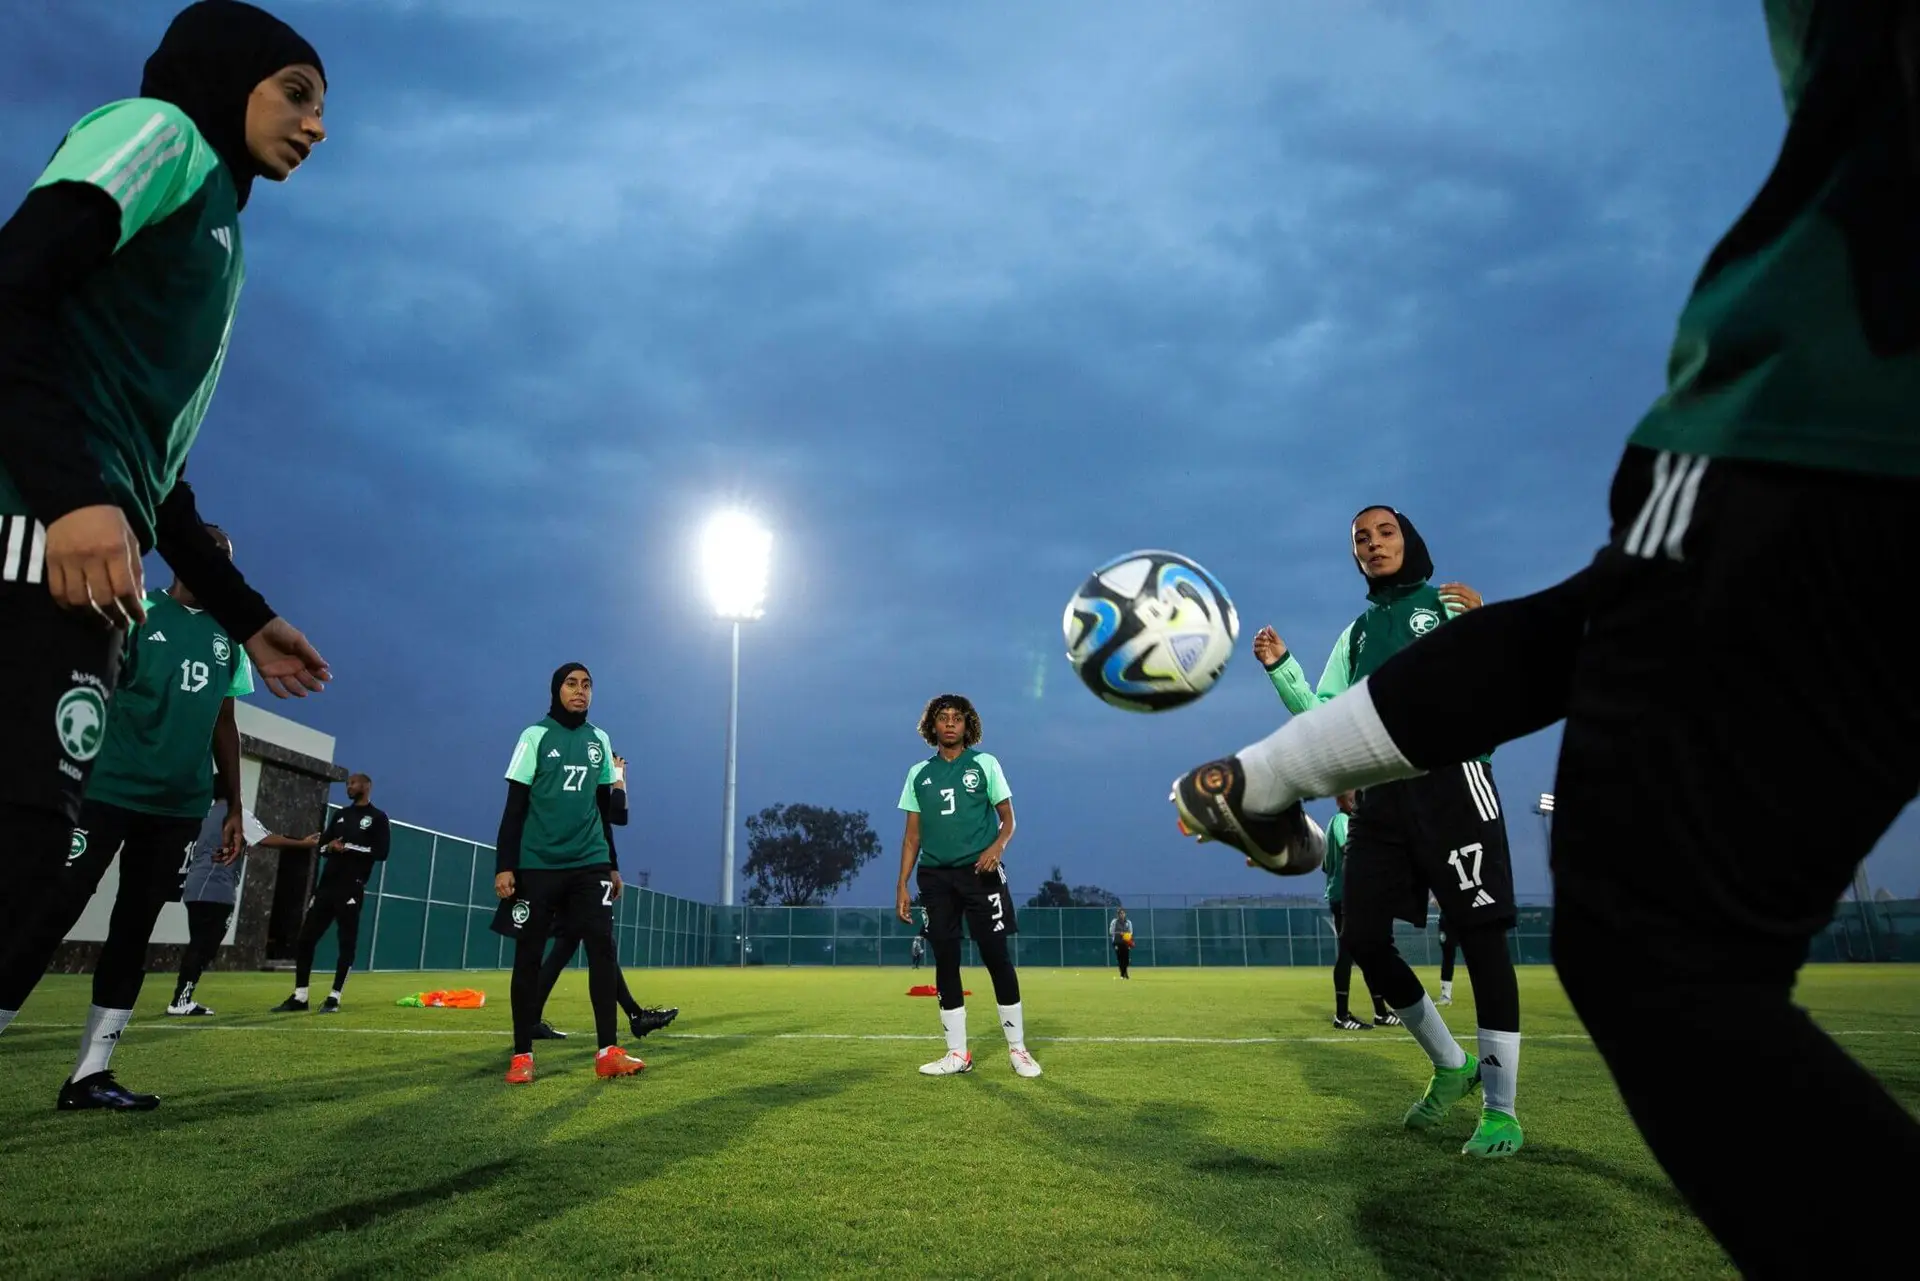 Seleção feminina de futebol saudita empata em primeiro jogo internacional  em casa – Monitor do Oriente